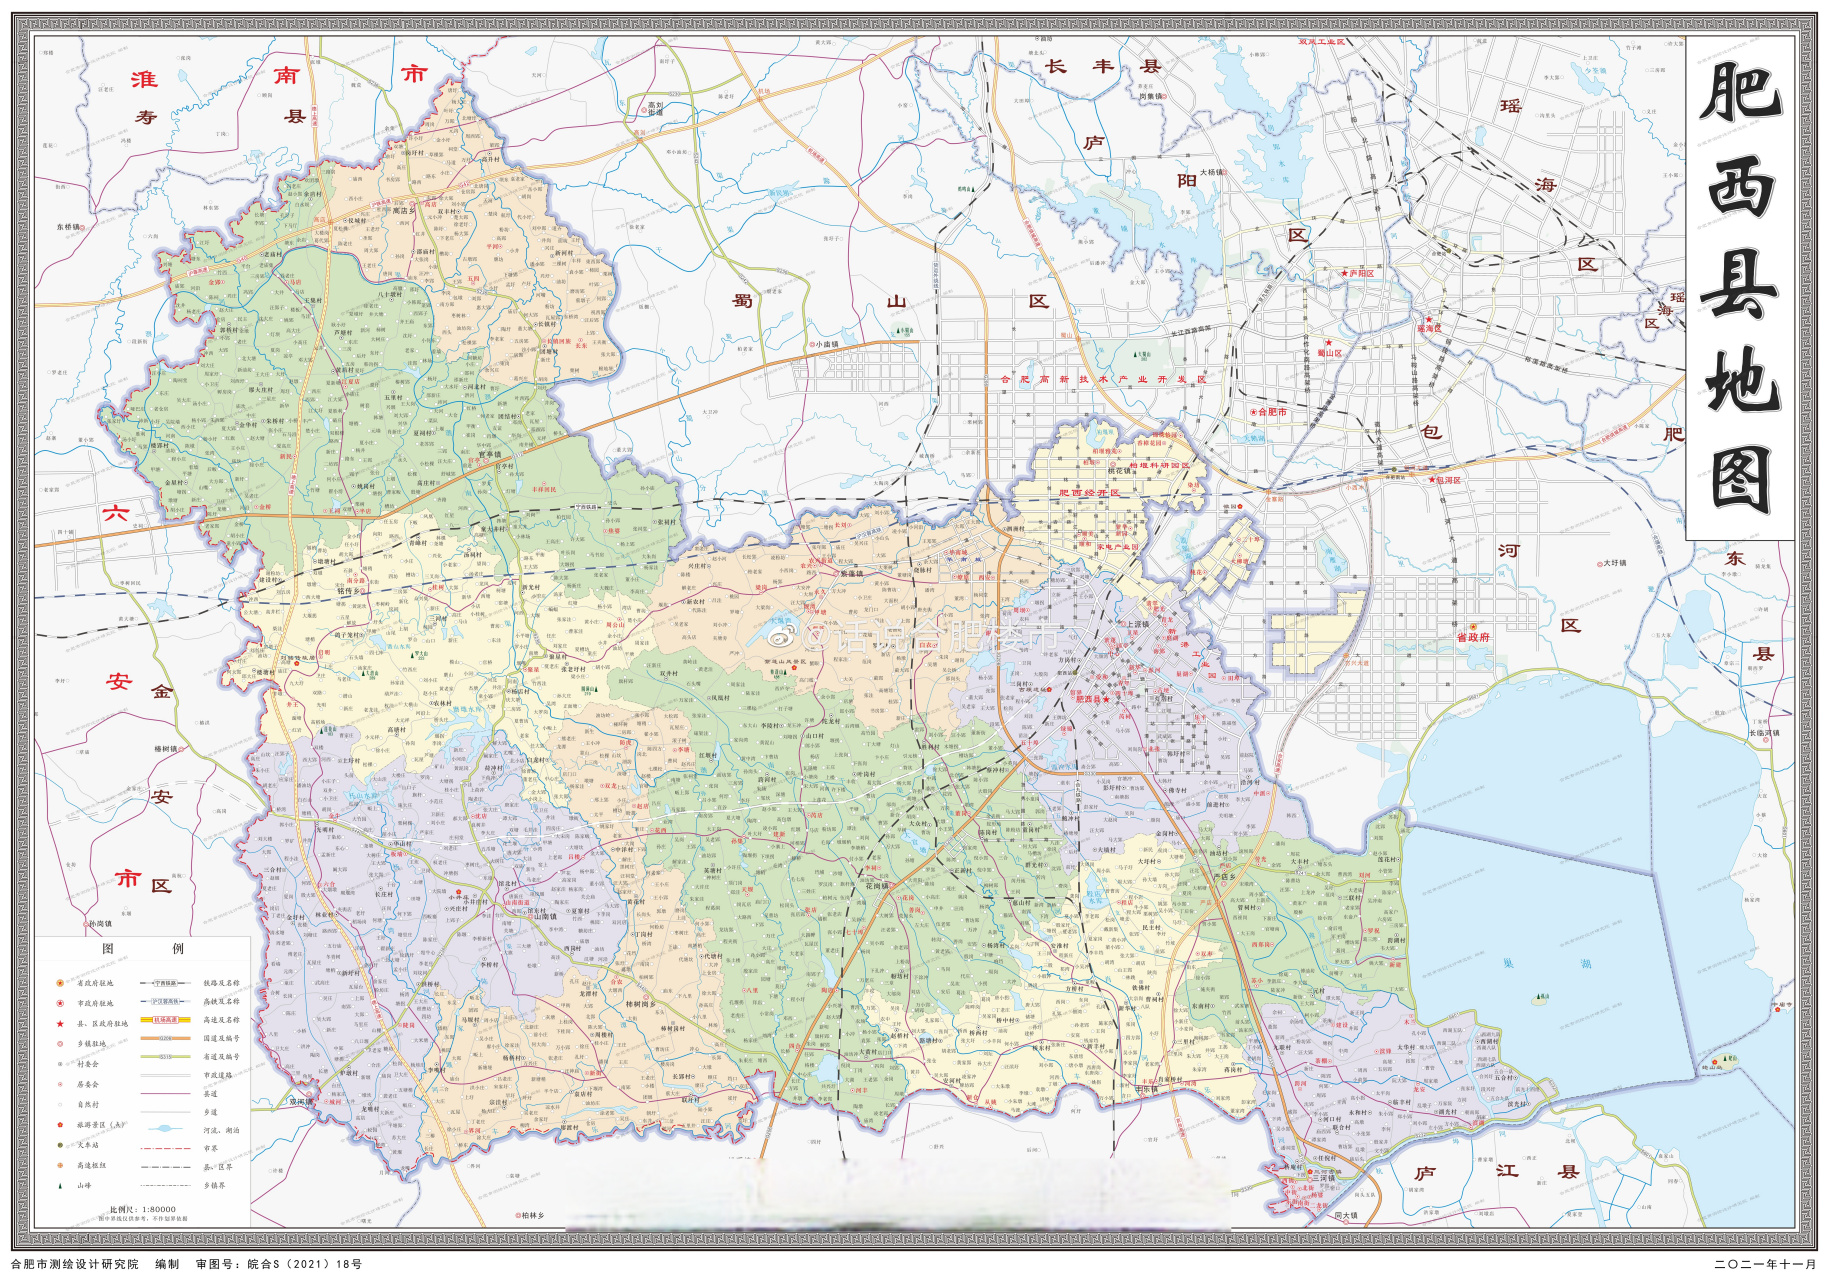 合肥三县肥西,肥东,长丰区域最新地图一览,都是与市区无缝对接,甚至有